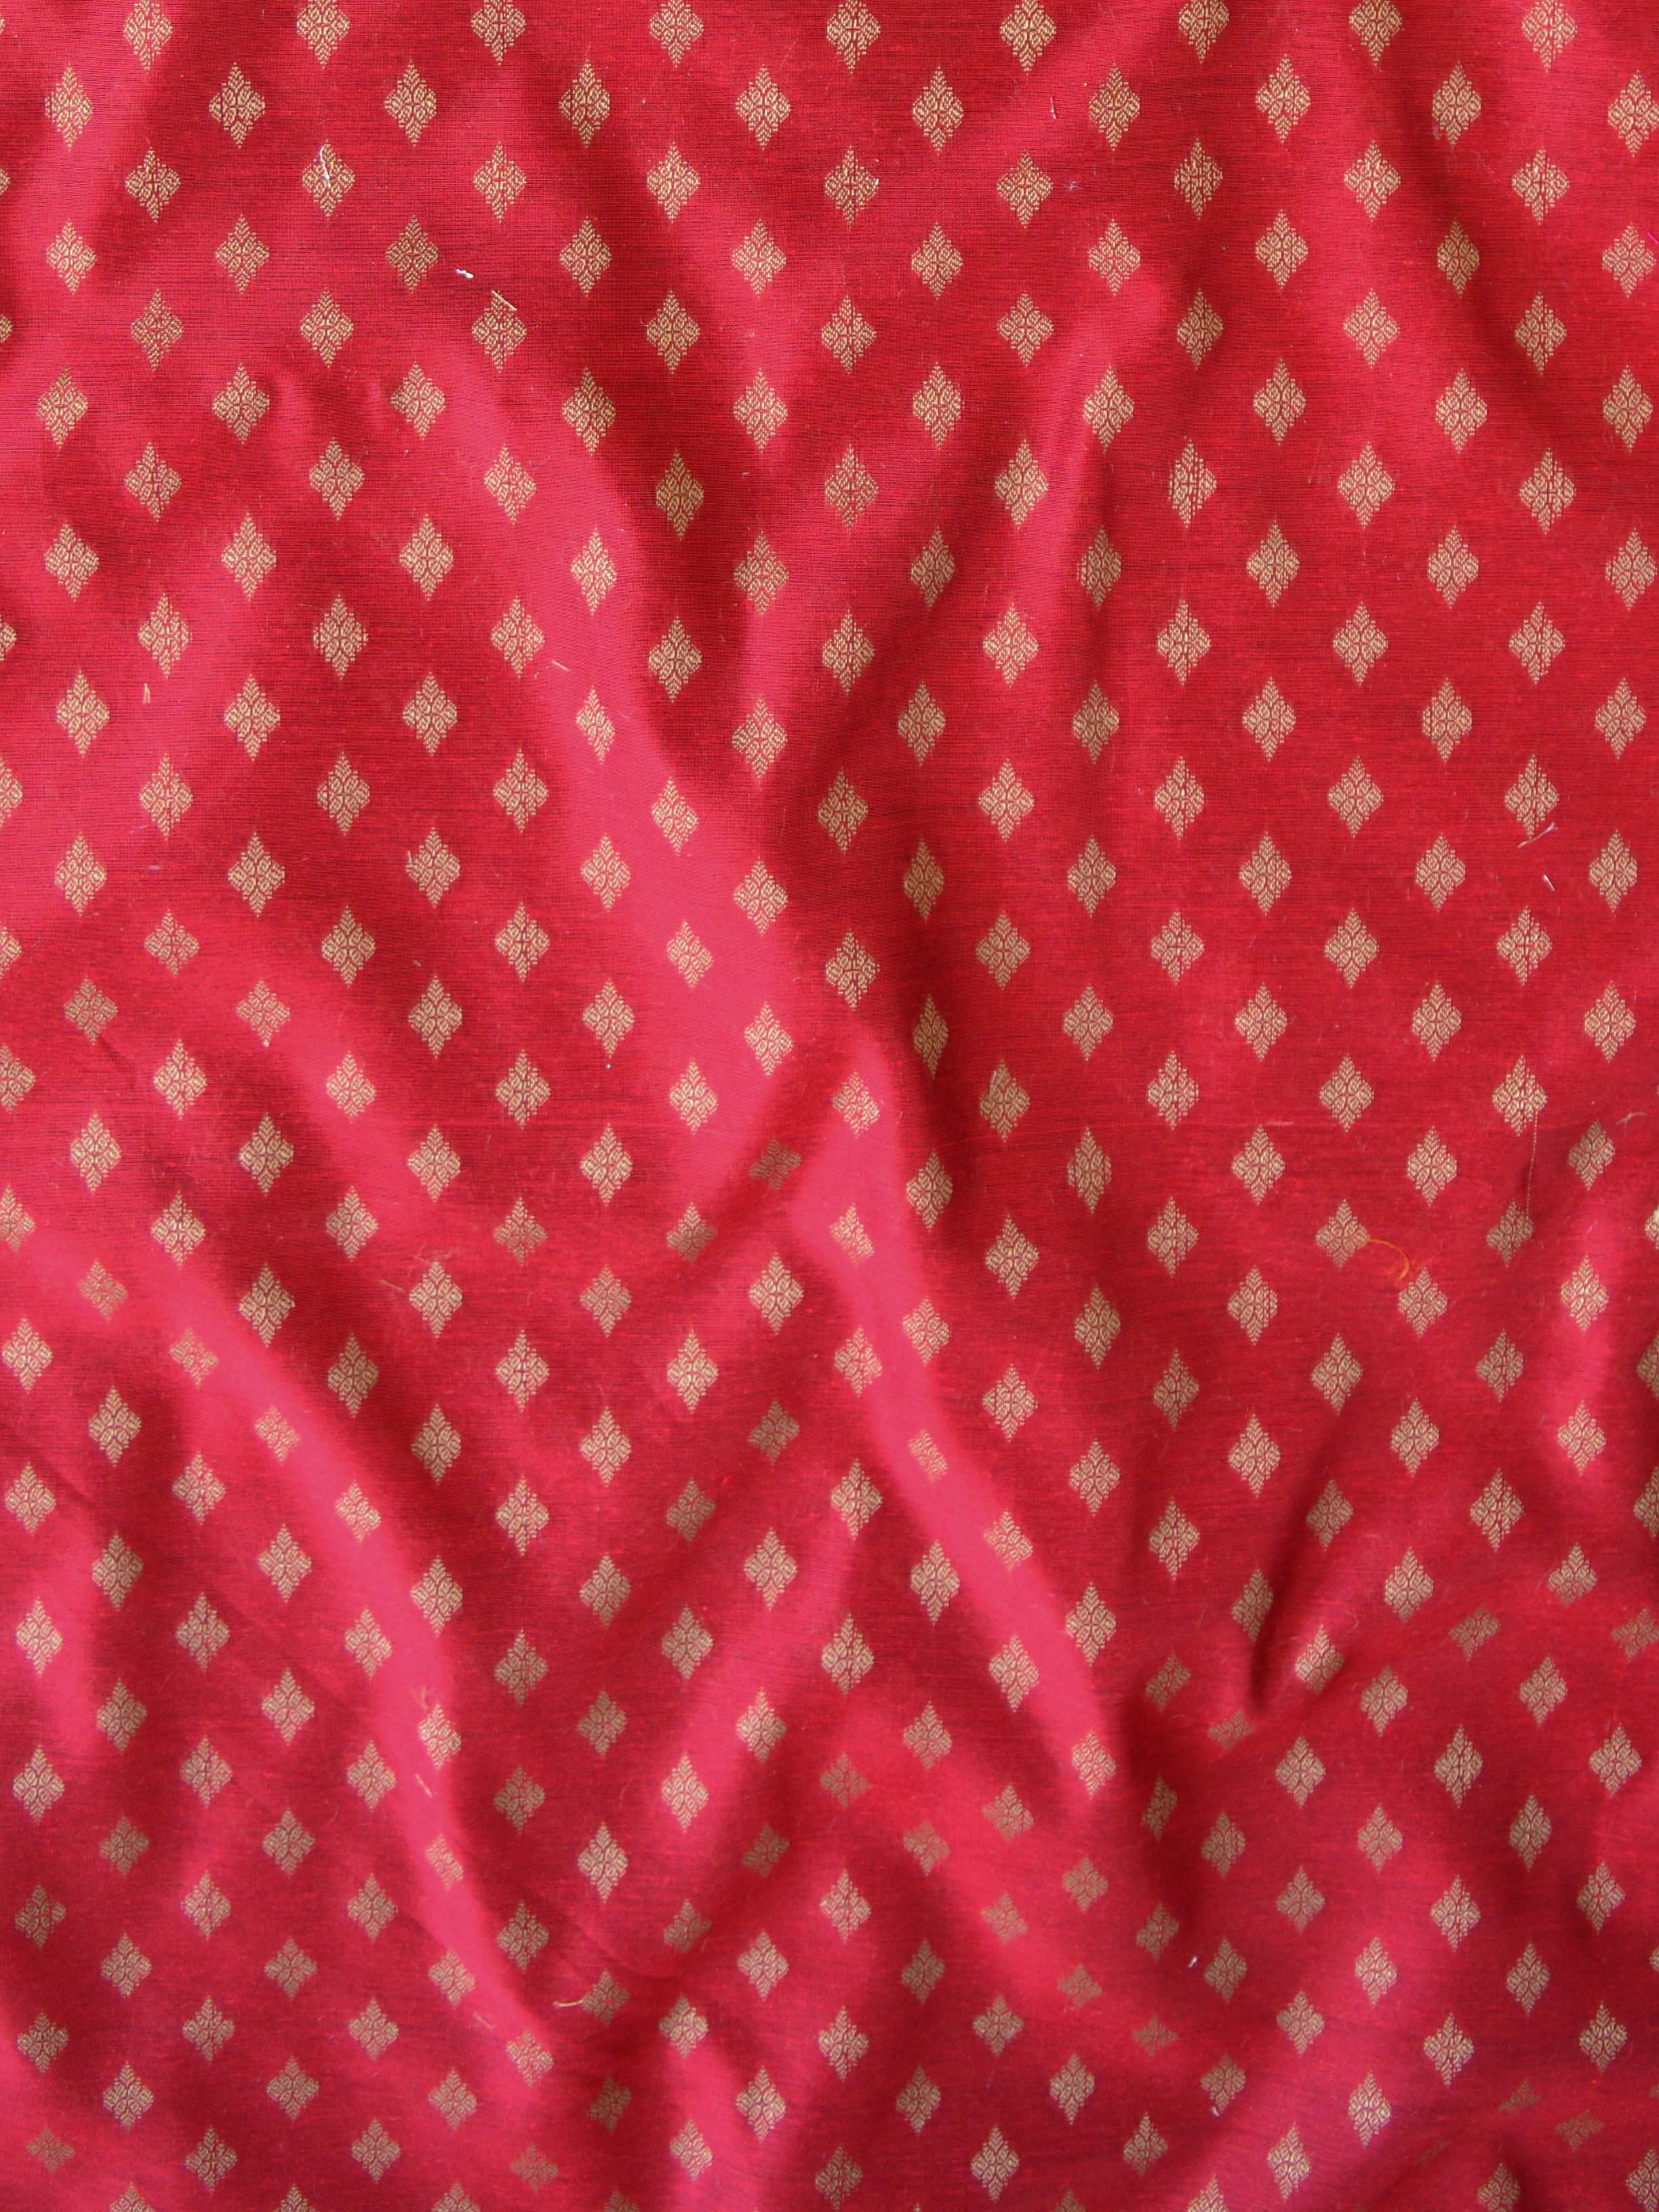 Banarasee Brocade Salwar Kameez Fabric With Organza Dupatta-Red & Black